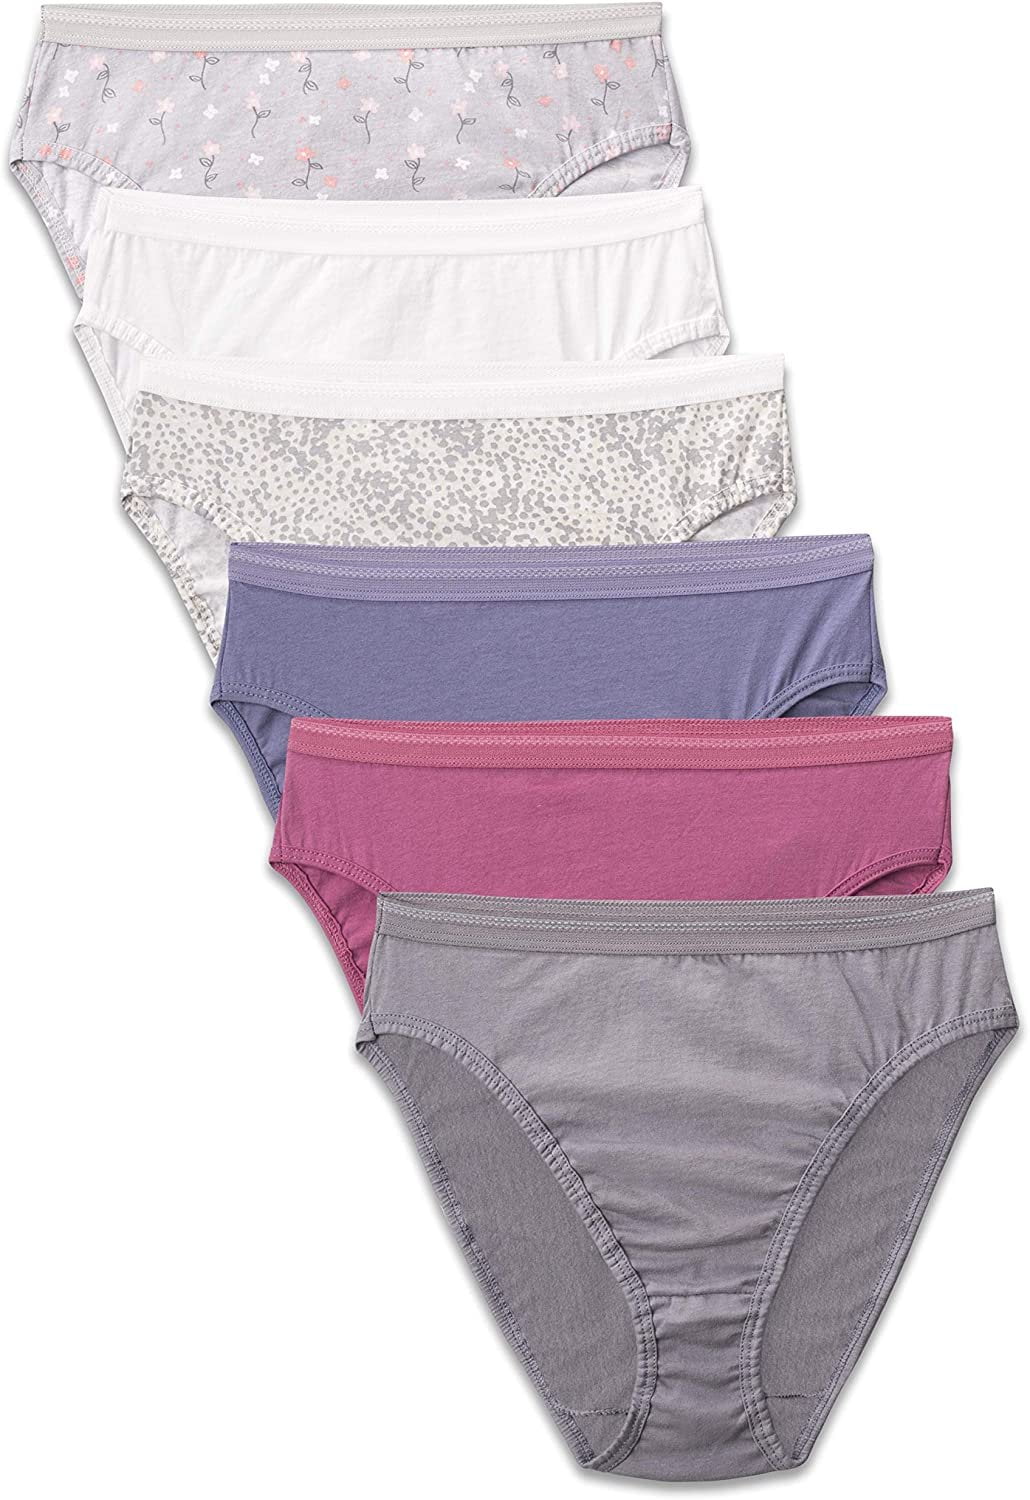 Hanes® Women's Constant Comfort® X-Temp® Hi-Cut Panties 3-Pack Assorted